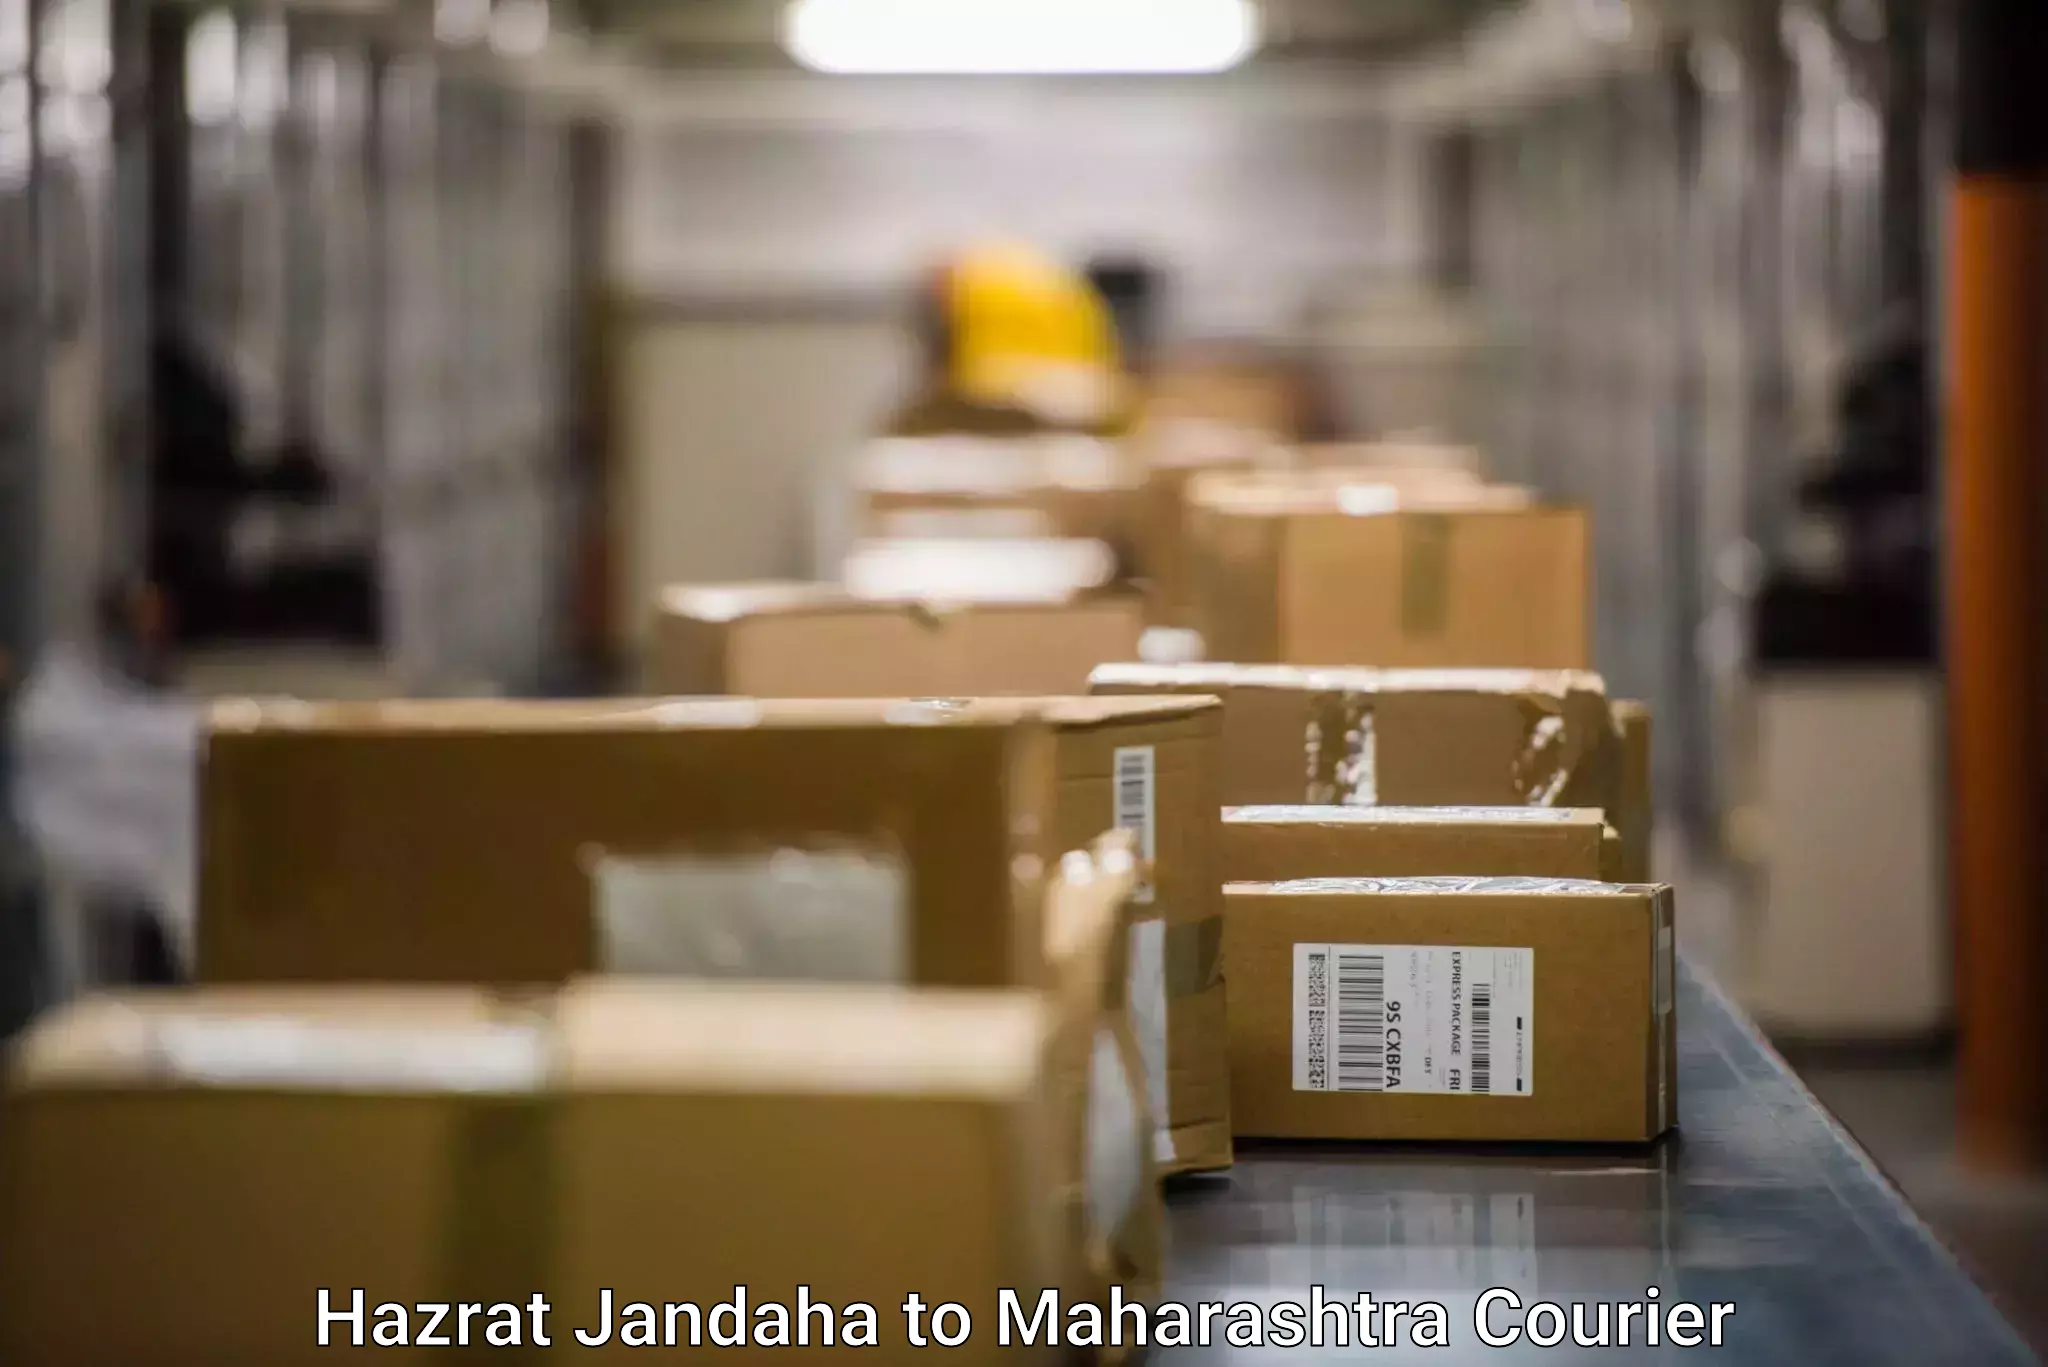 Seamless shipping service Hazrat Jandaha to Maharashtra